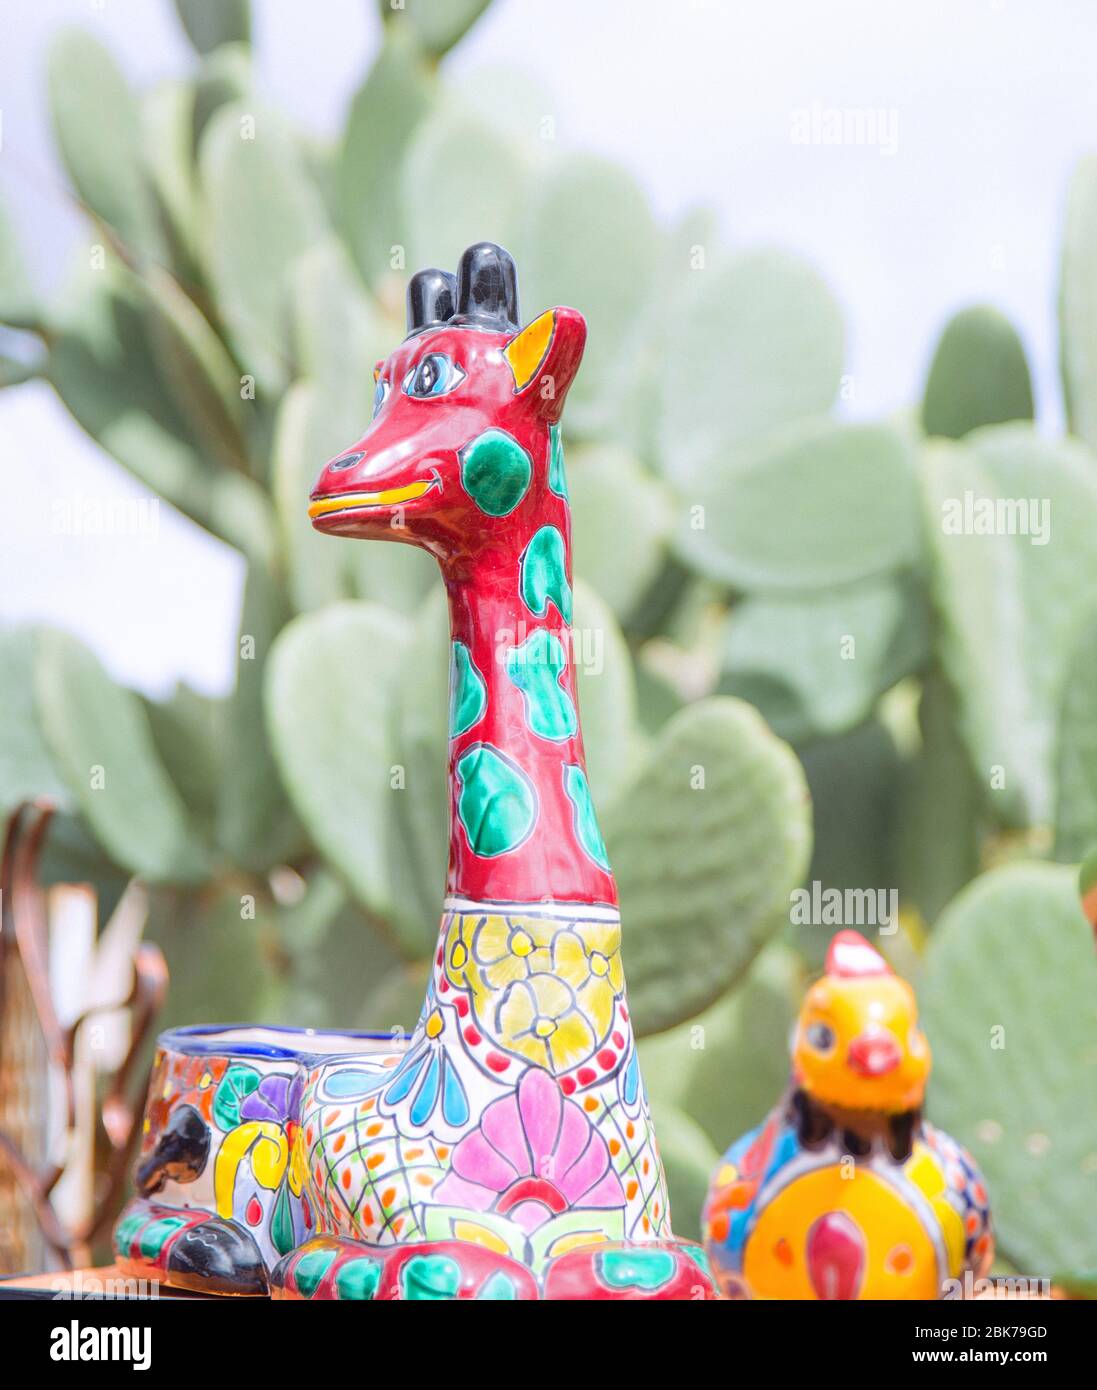 Girafe en céramique avec peinture colorée Banque D'Images